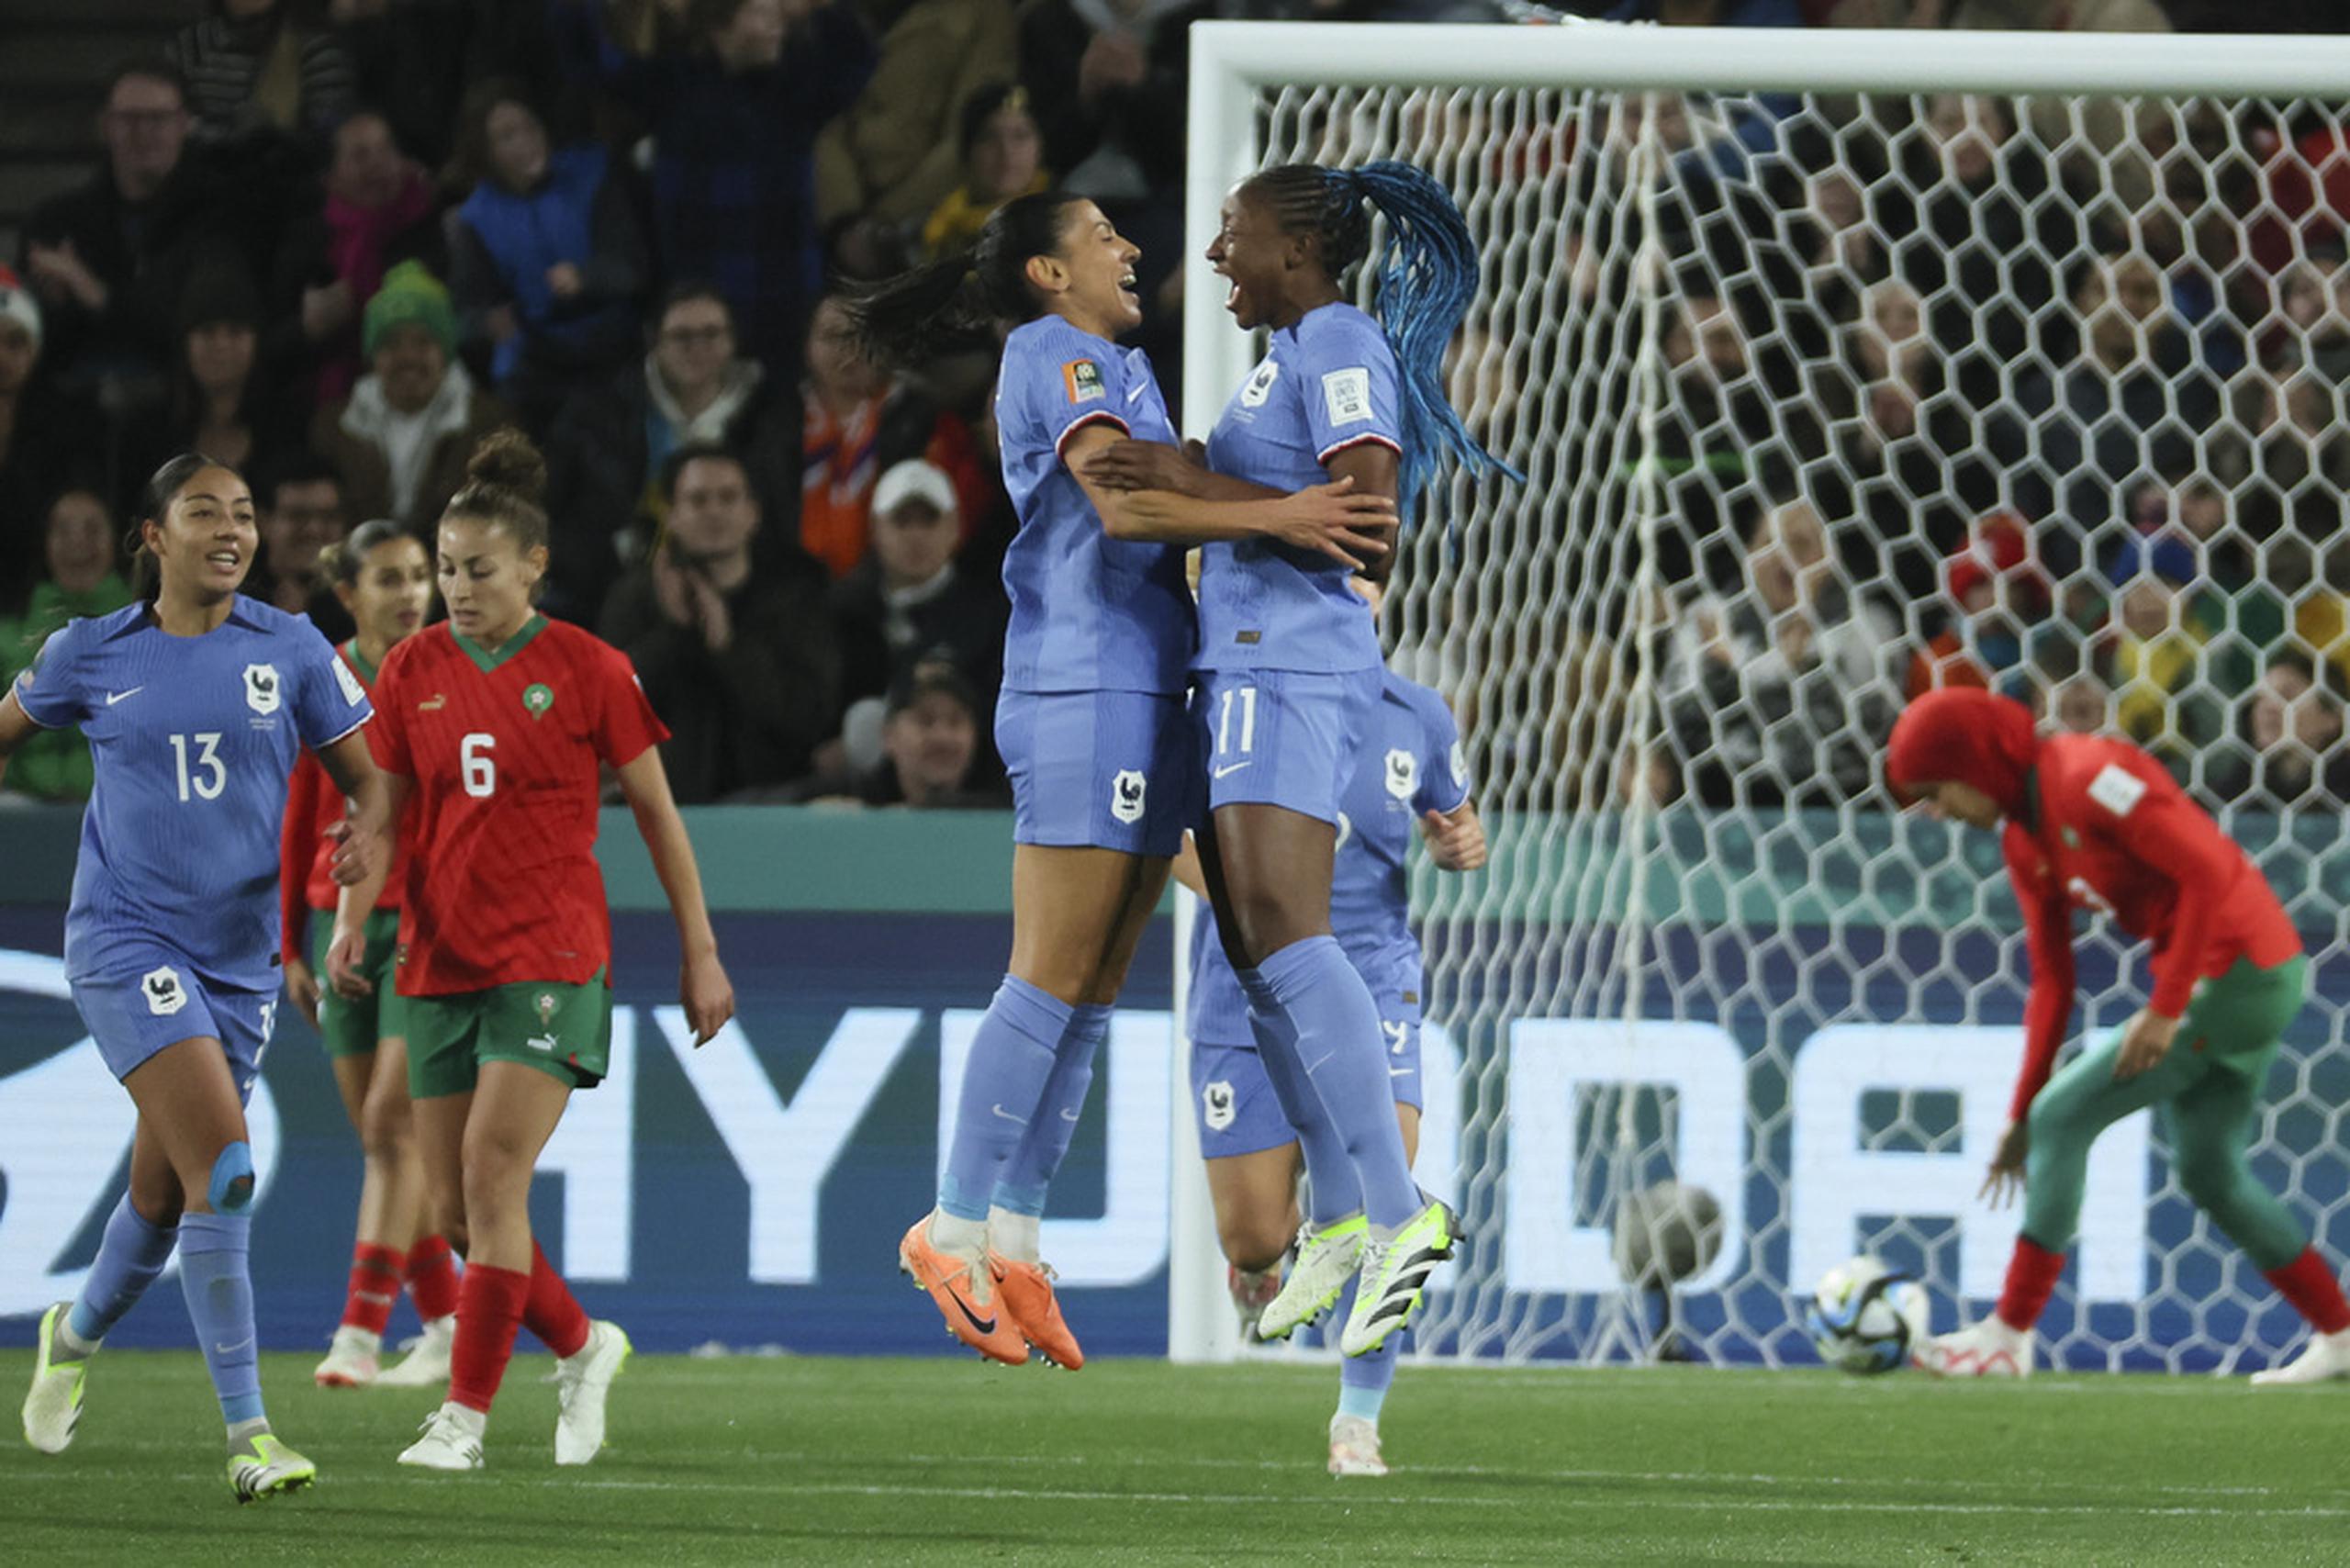 Kenza Dali es felicitada por su compañera Kadidiatou Diani (derecha) tras anotar el segundo gol de Francia en la victoria 4-0 ante Marruecos en el Mundial femenino.